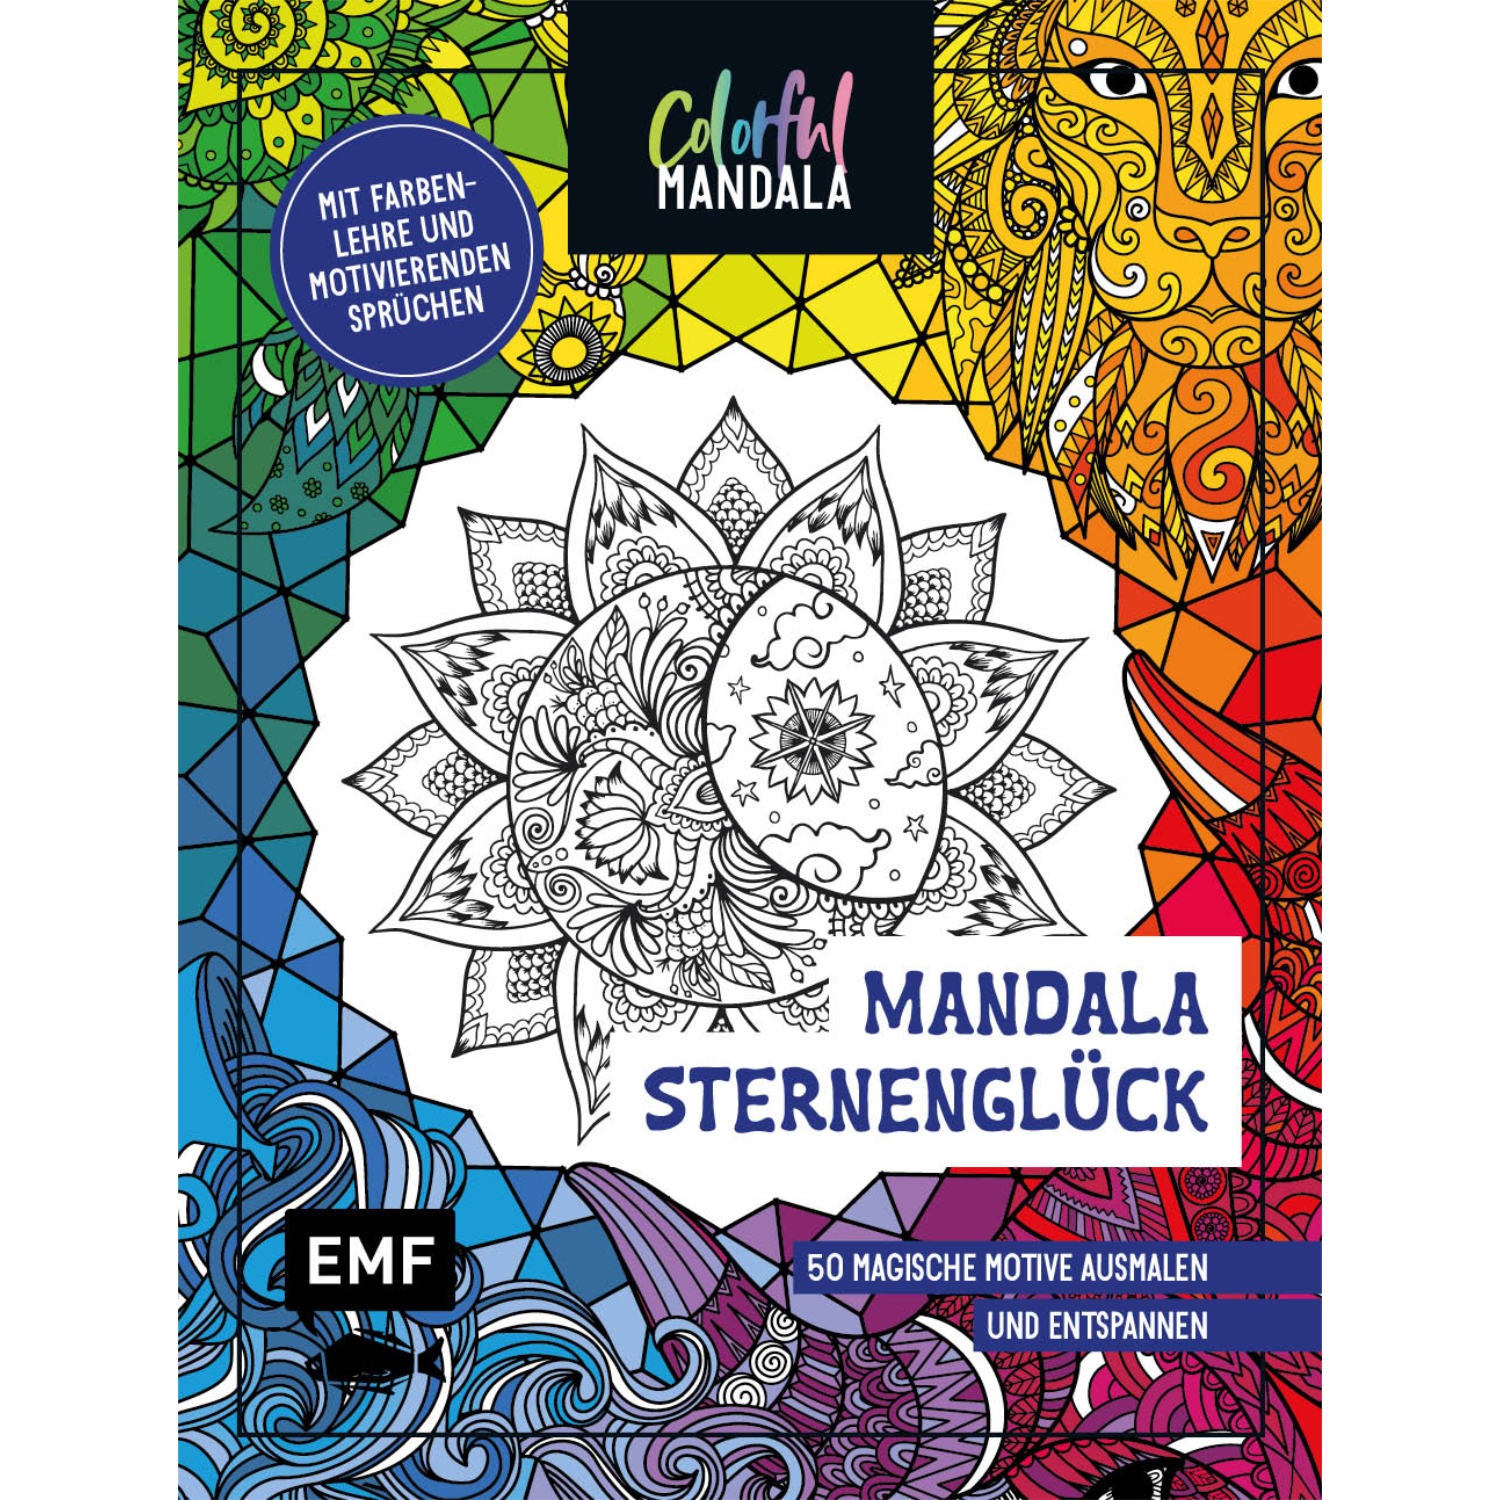 Colorful Mandala – Sternenglück